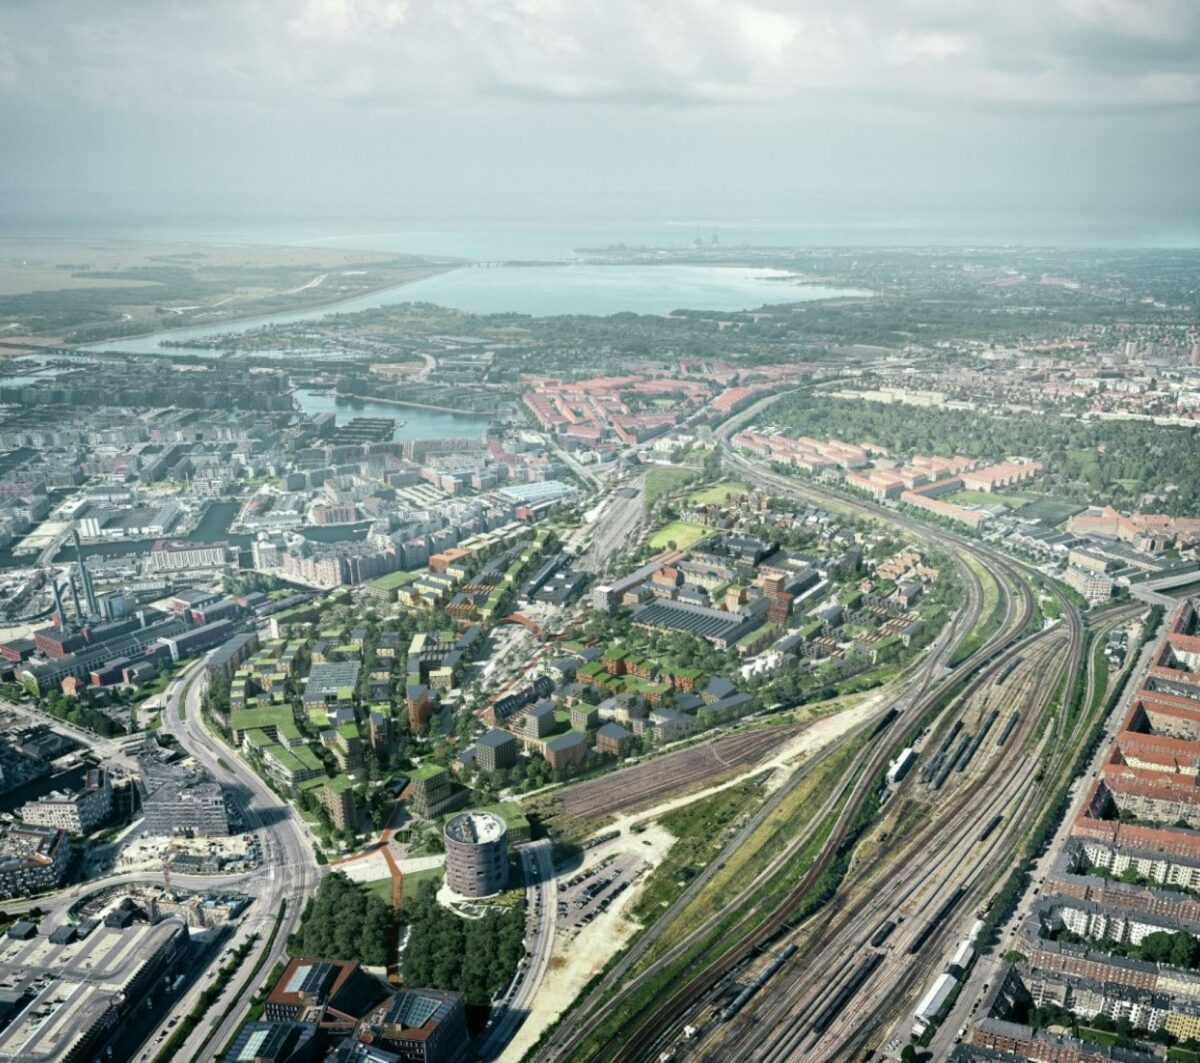 Jernbanebyen kommer til at ligge på DSBs historiske arealer i området mellem Vesterbro, Kgs. Enghave og Teglholmen. Illustration: Cobe.